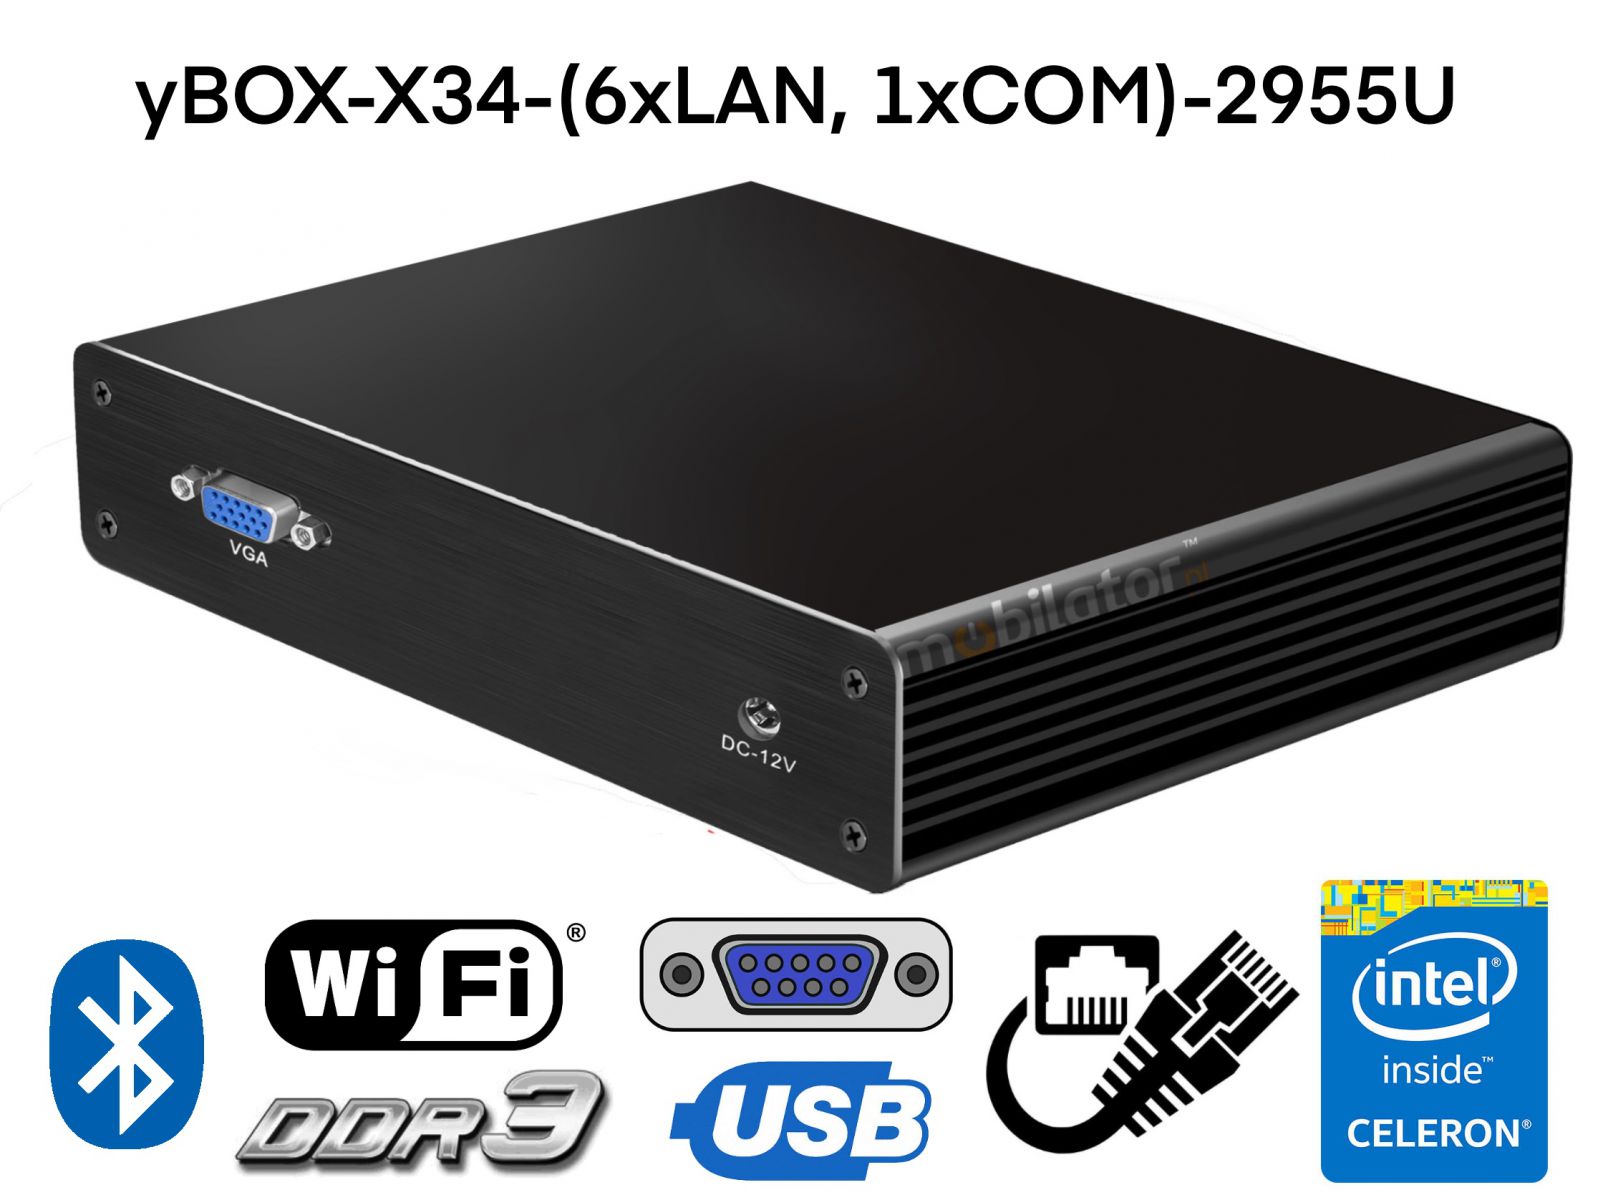 Wzmocniony fanless komputer 6xLAN dla przemysu, 128GB SSD, WiFi, Bluetooth, MiniPC yBOX-X34-(6xLAN, 1xCOM)-2955U v.2